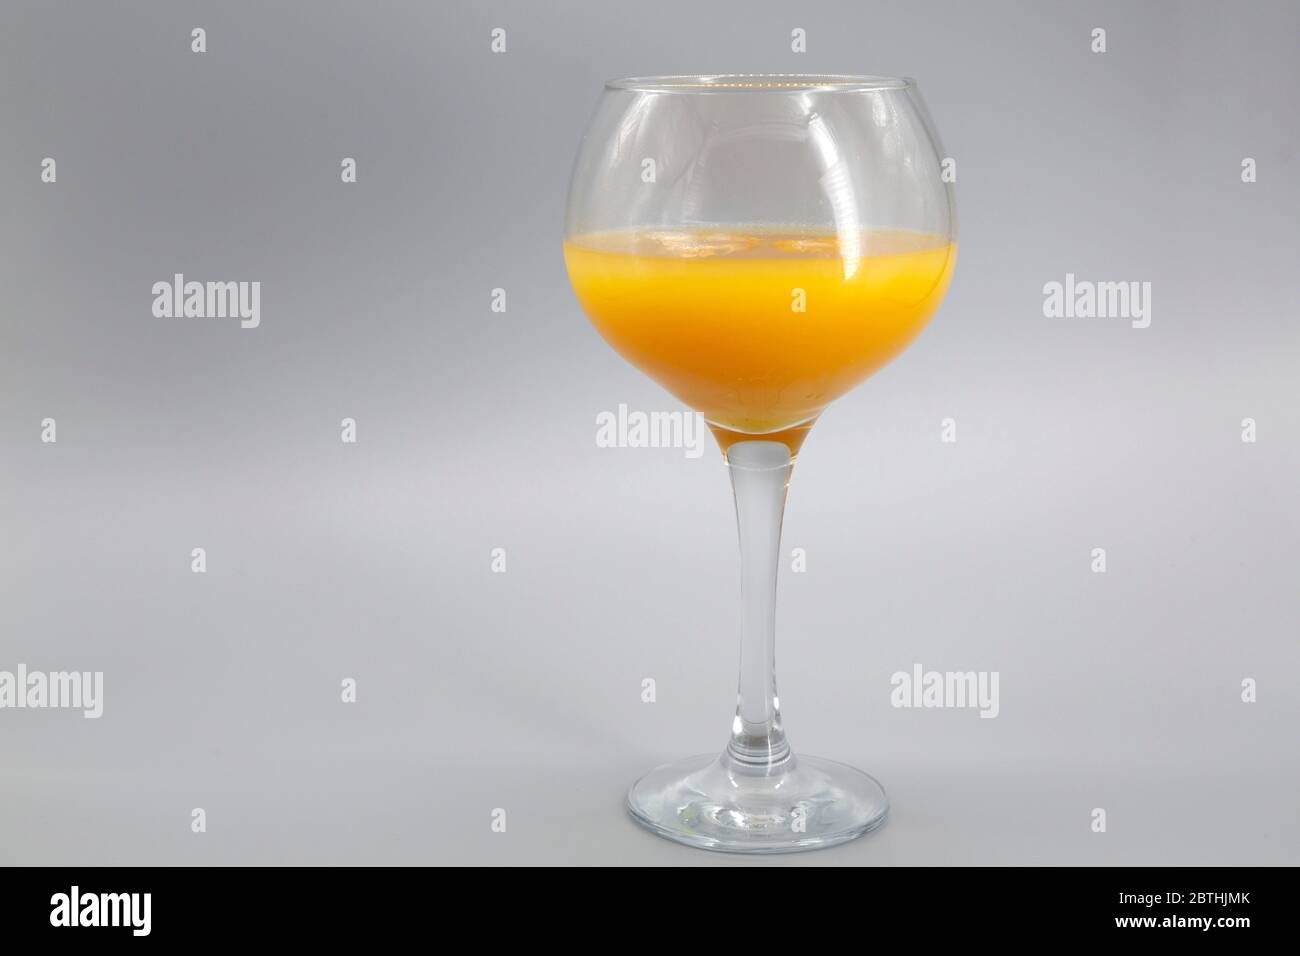 Une slammer d'Alabama servie dans un verre à ballons. Le cocktail comprend du confort du Sud, du Sloe Gin, de l'Amaretto et du jus d'orange. Banque D'Images